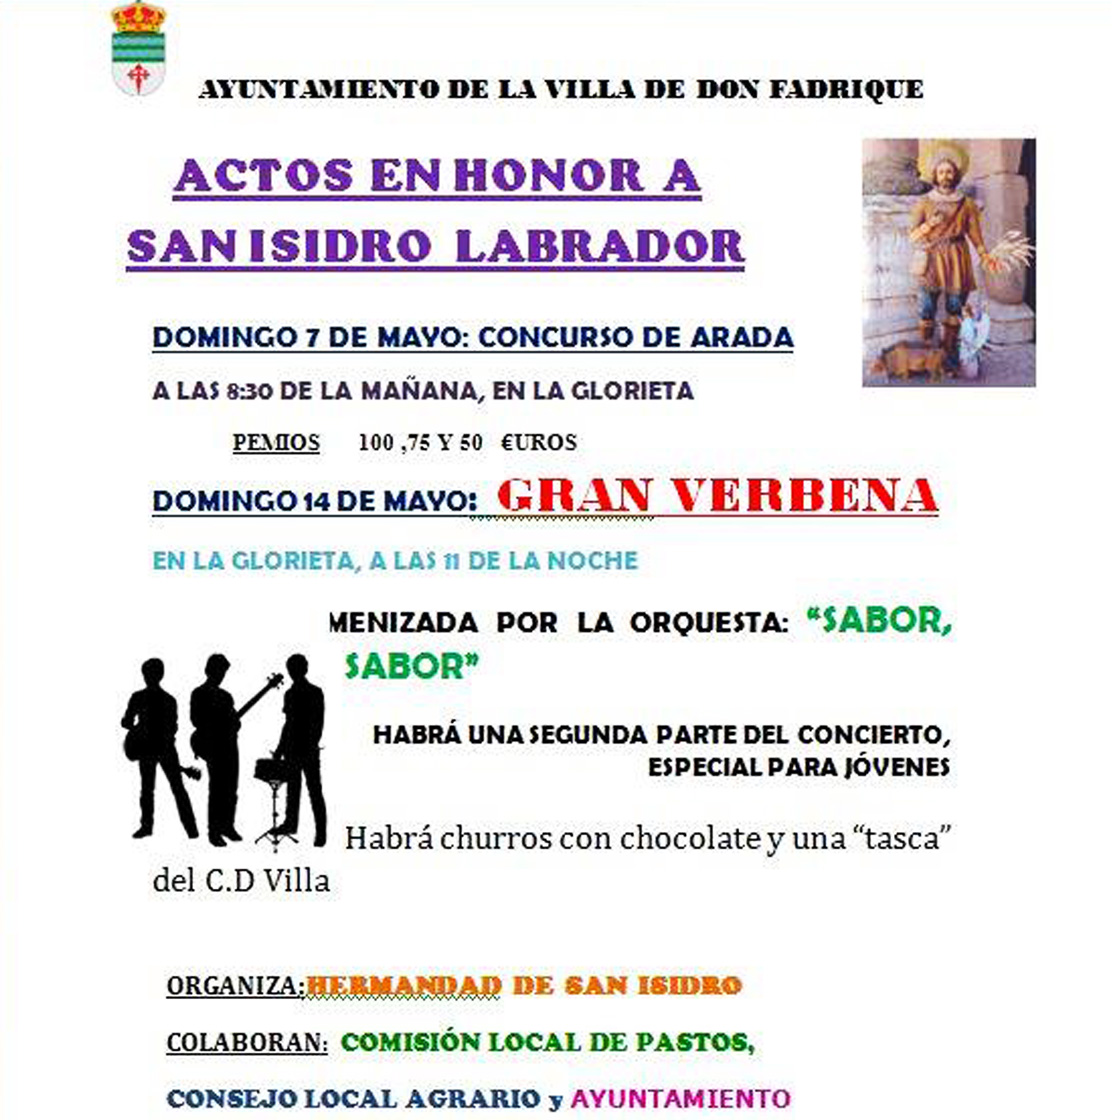 Actos en honor a San Isidro Labrador en La Villa de Don Fadrique